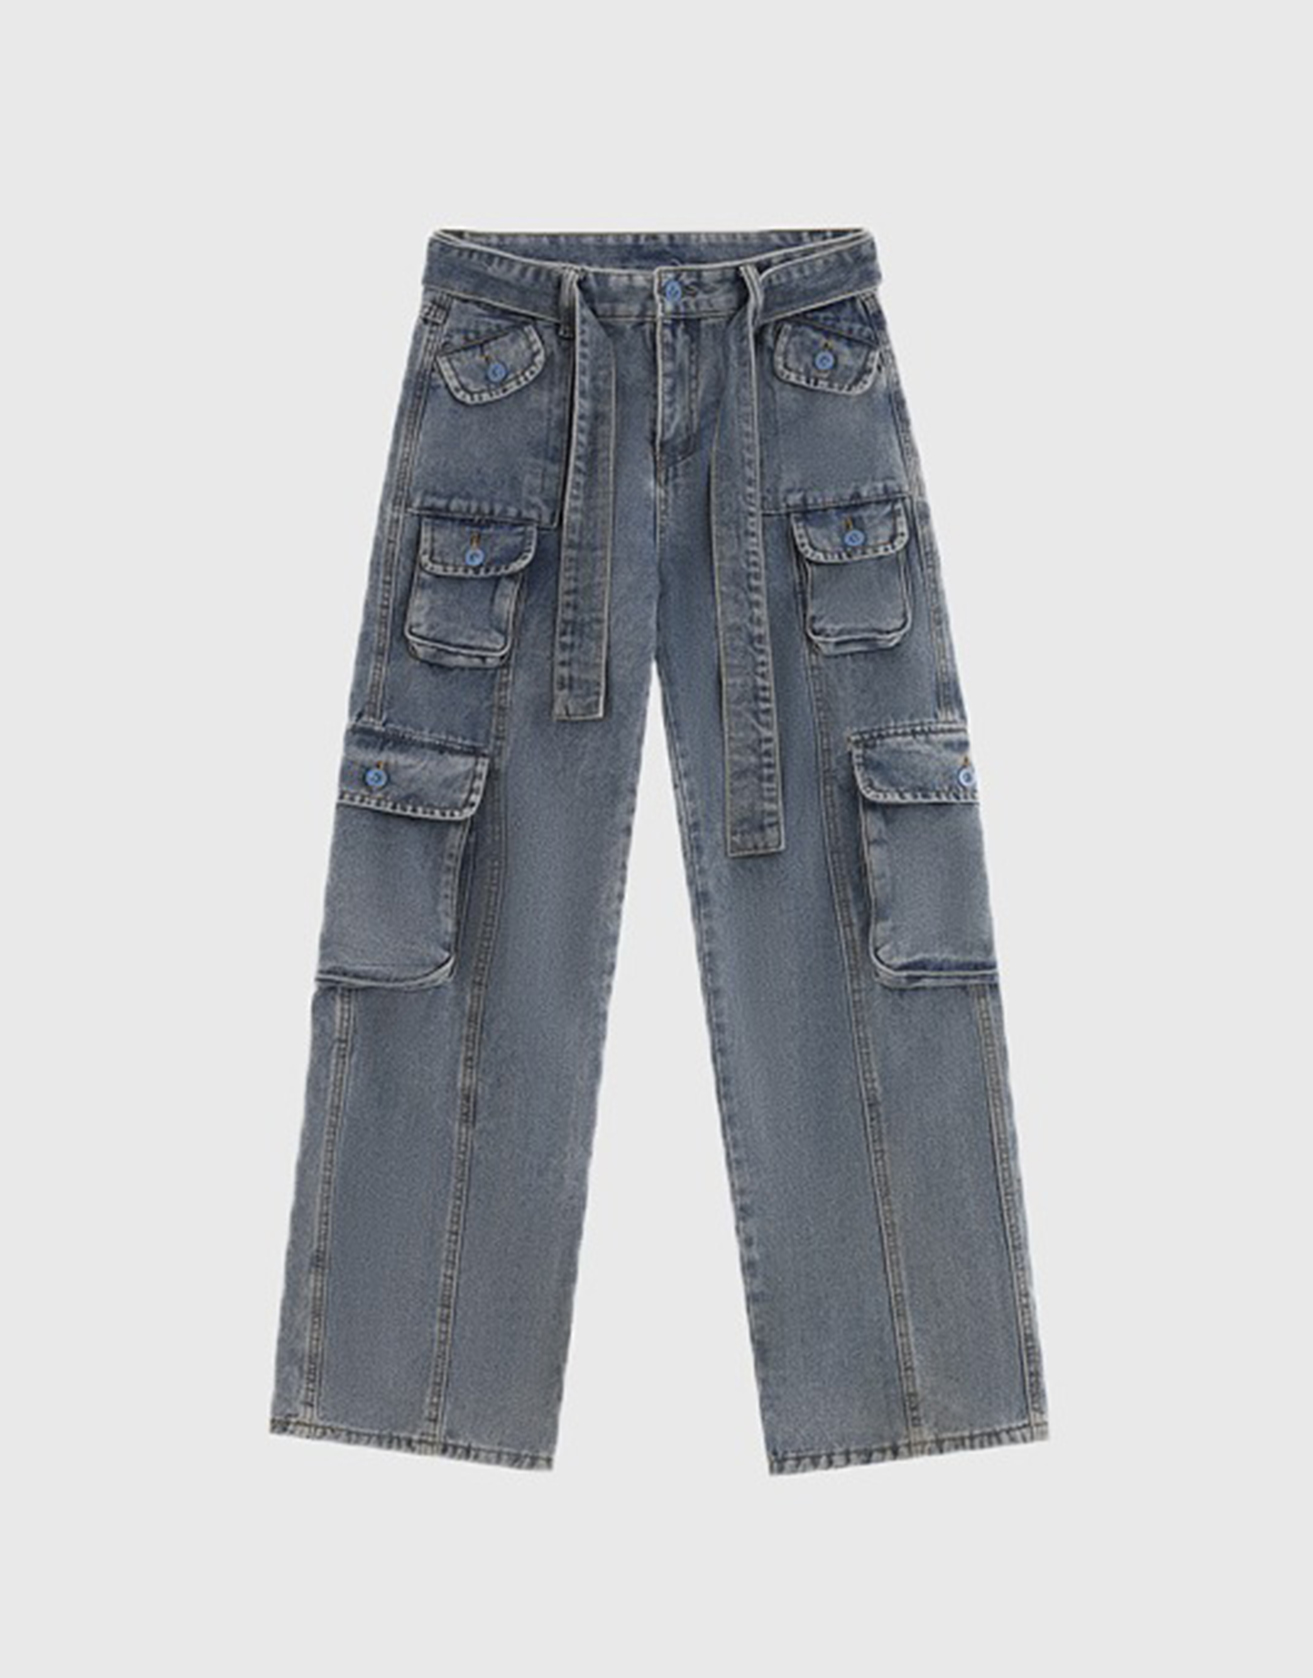 Multi-pocket Street Style Jeans / TECHWEAR CLUB / Techwear